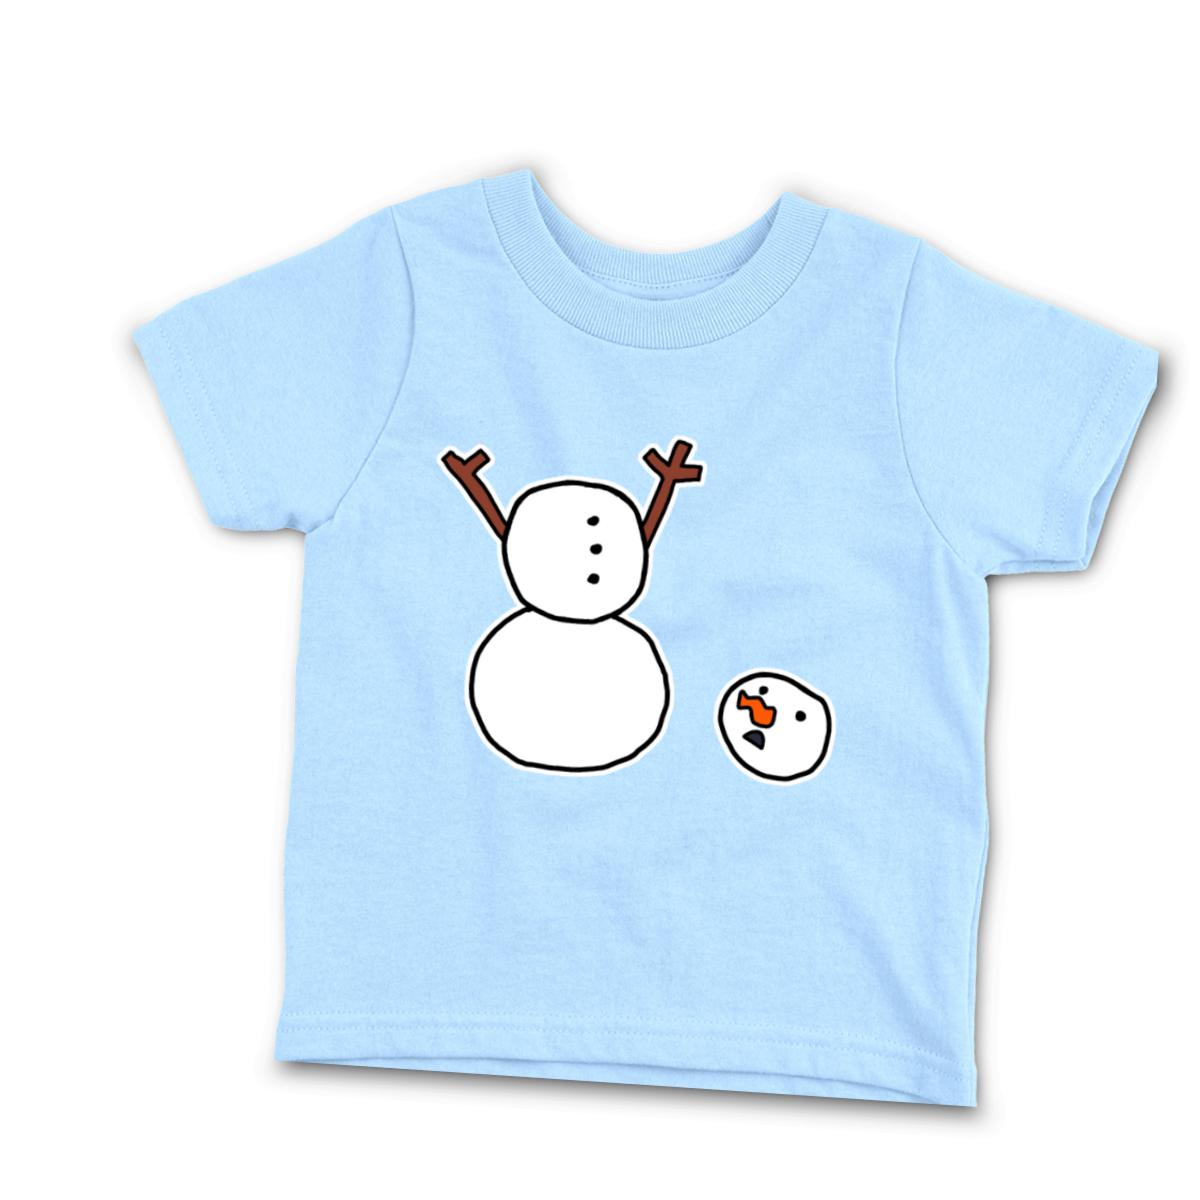 Headless Snowman Infant Tee 12M light-blue